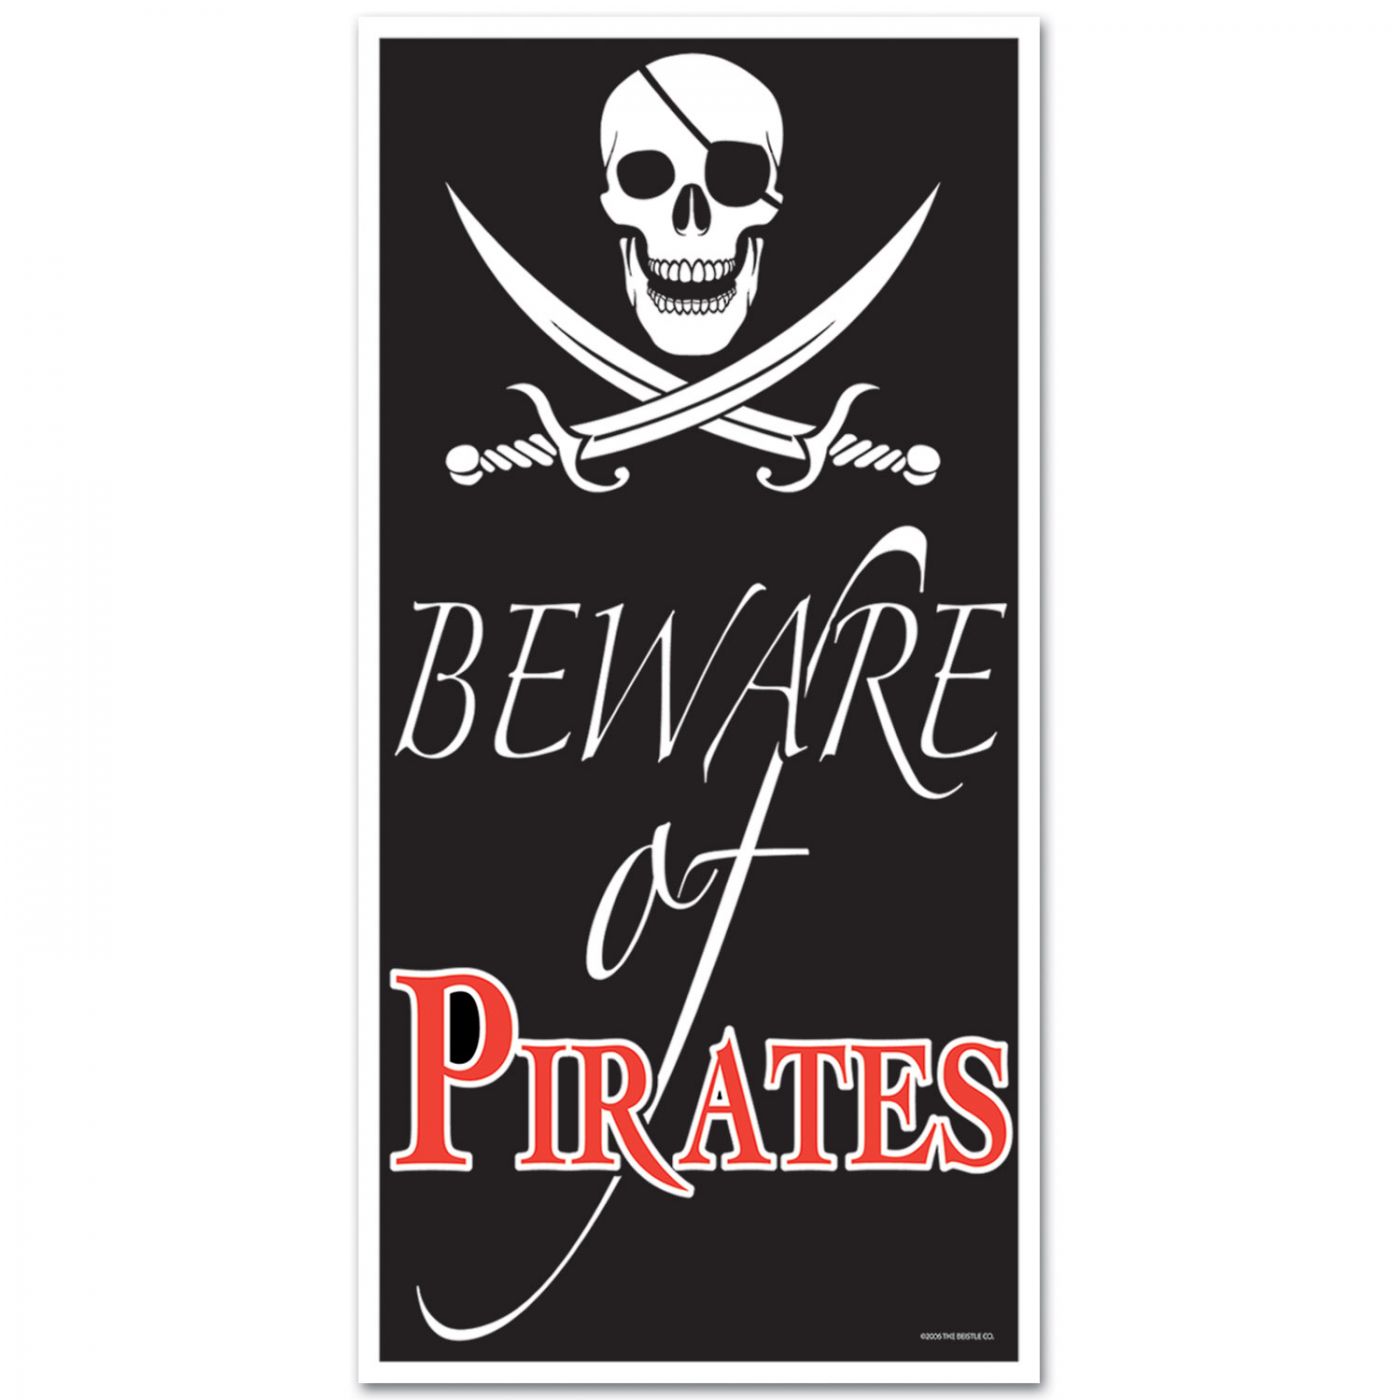 Beware Of Pirates Door Cover image